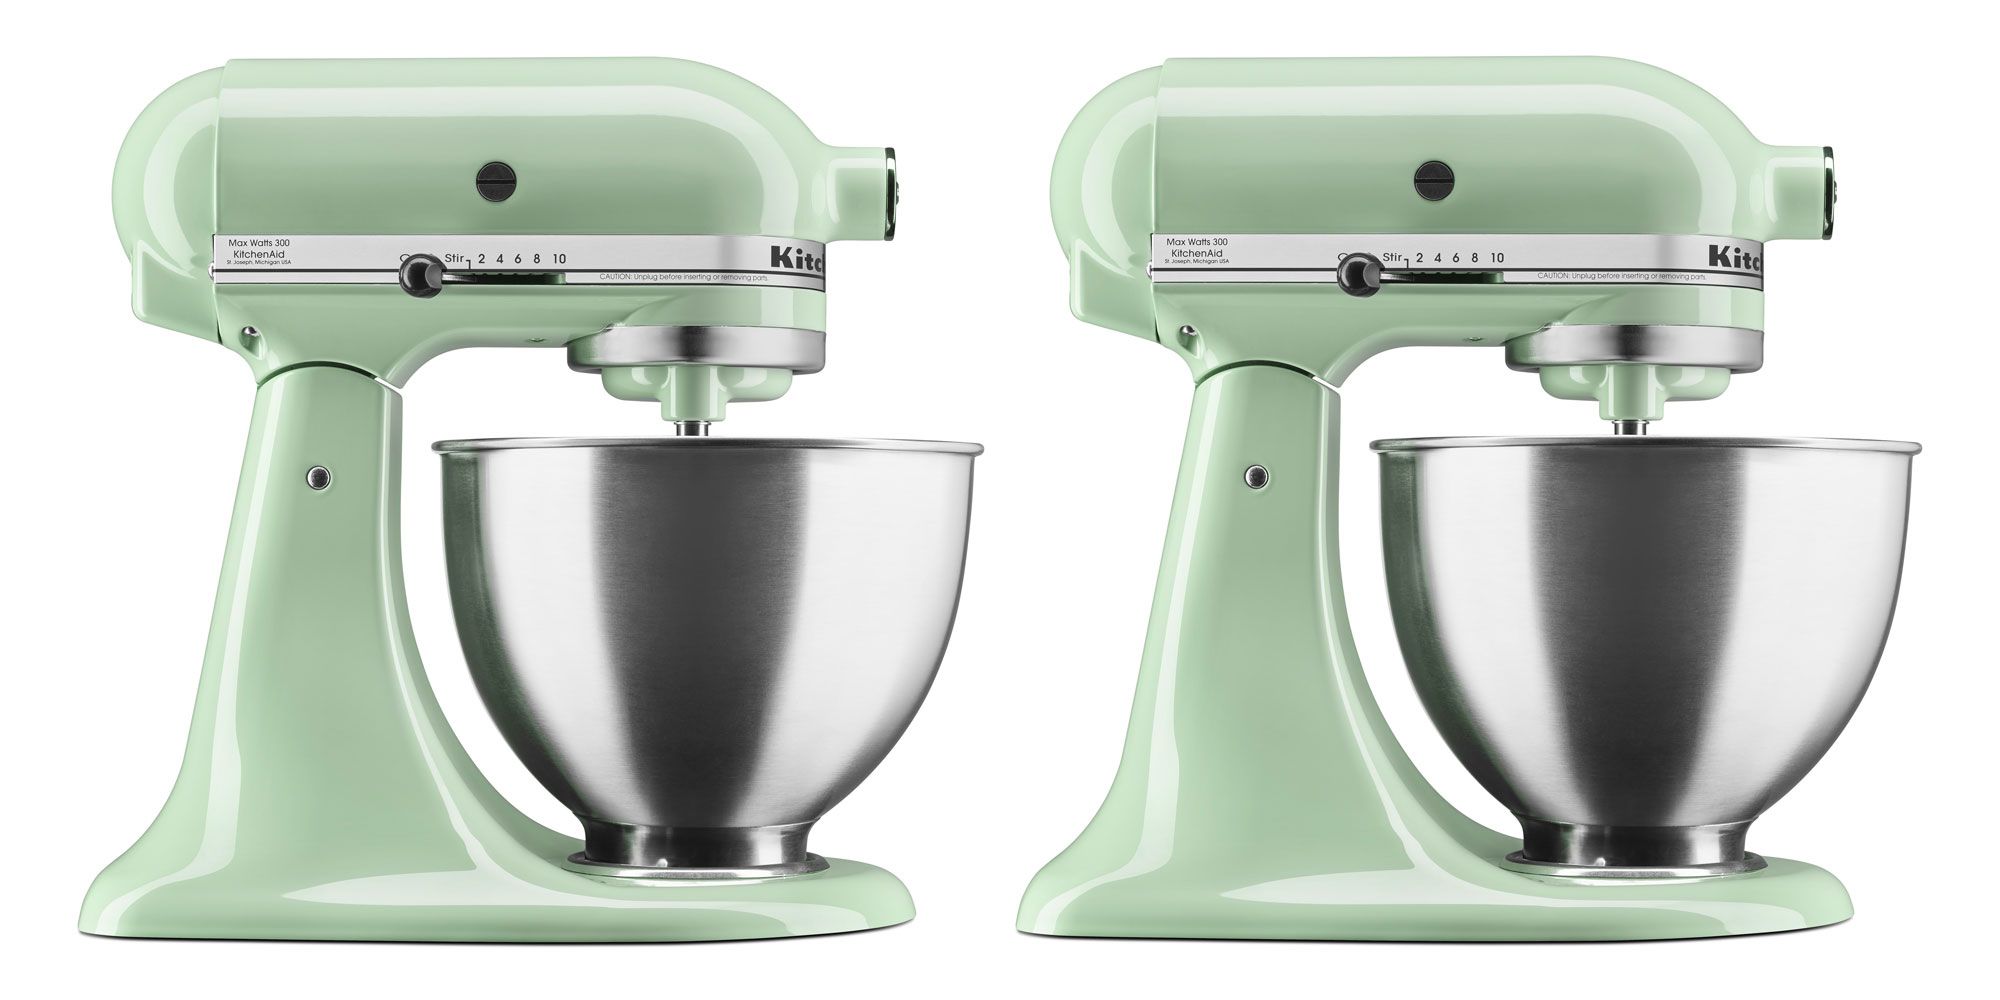 KitchenAid Green Mixer Color Comparison - Green Apple, Pistachio, Sea Glass  